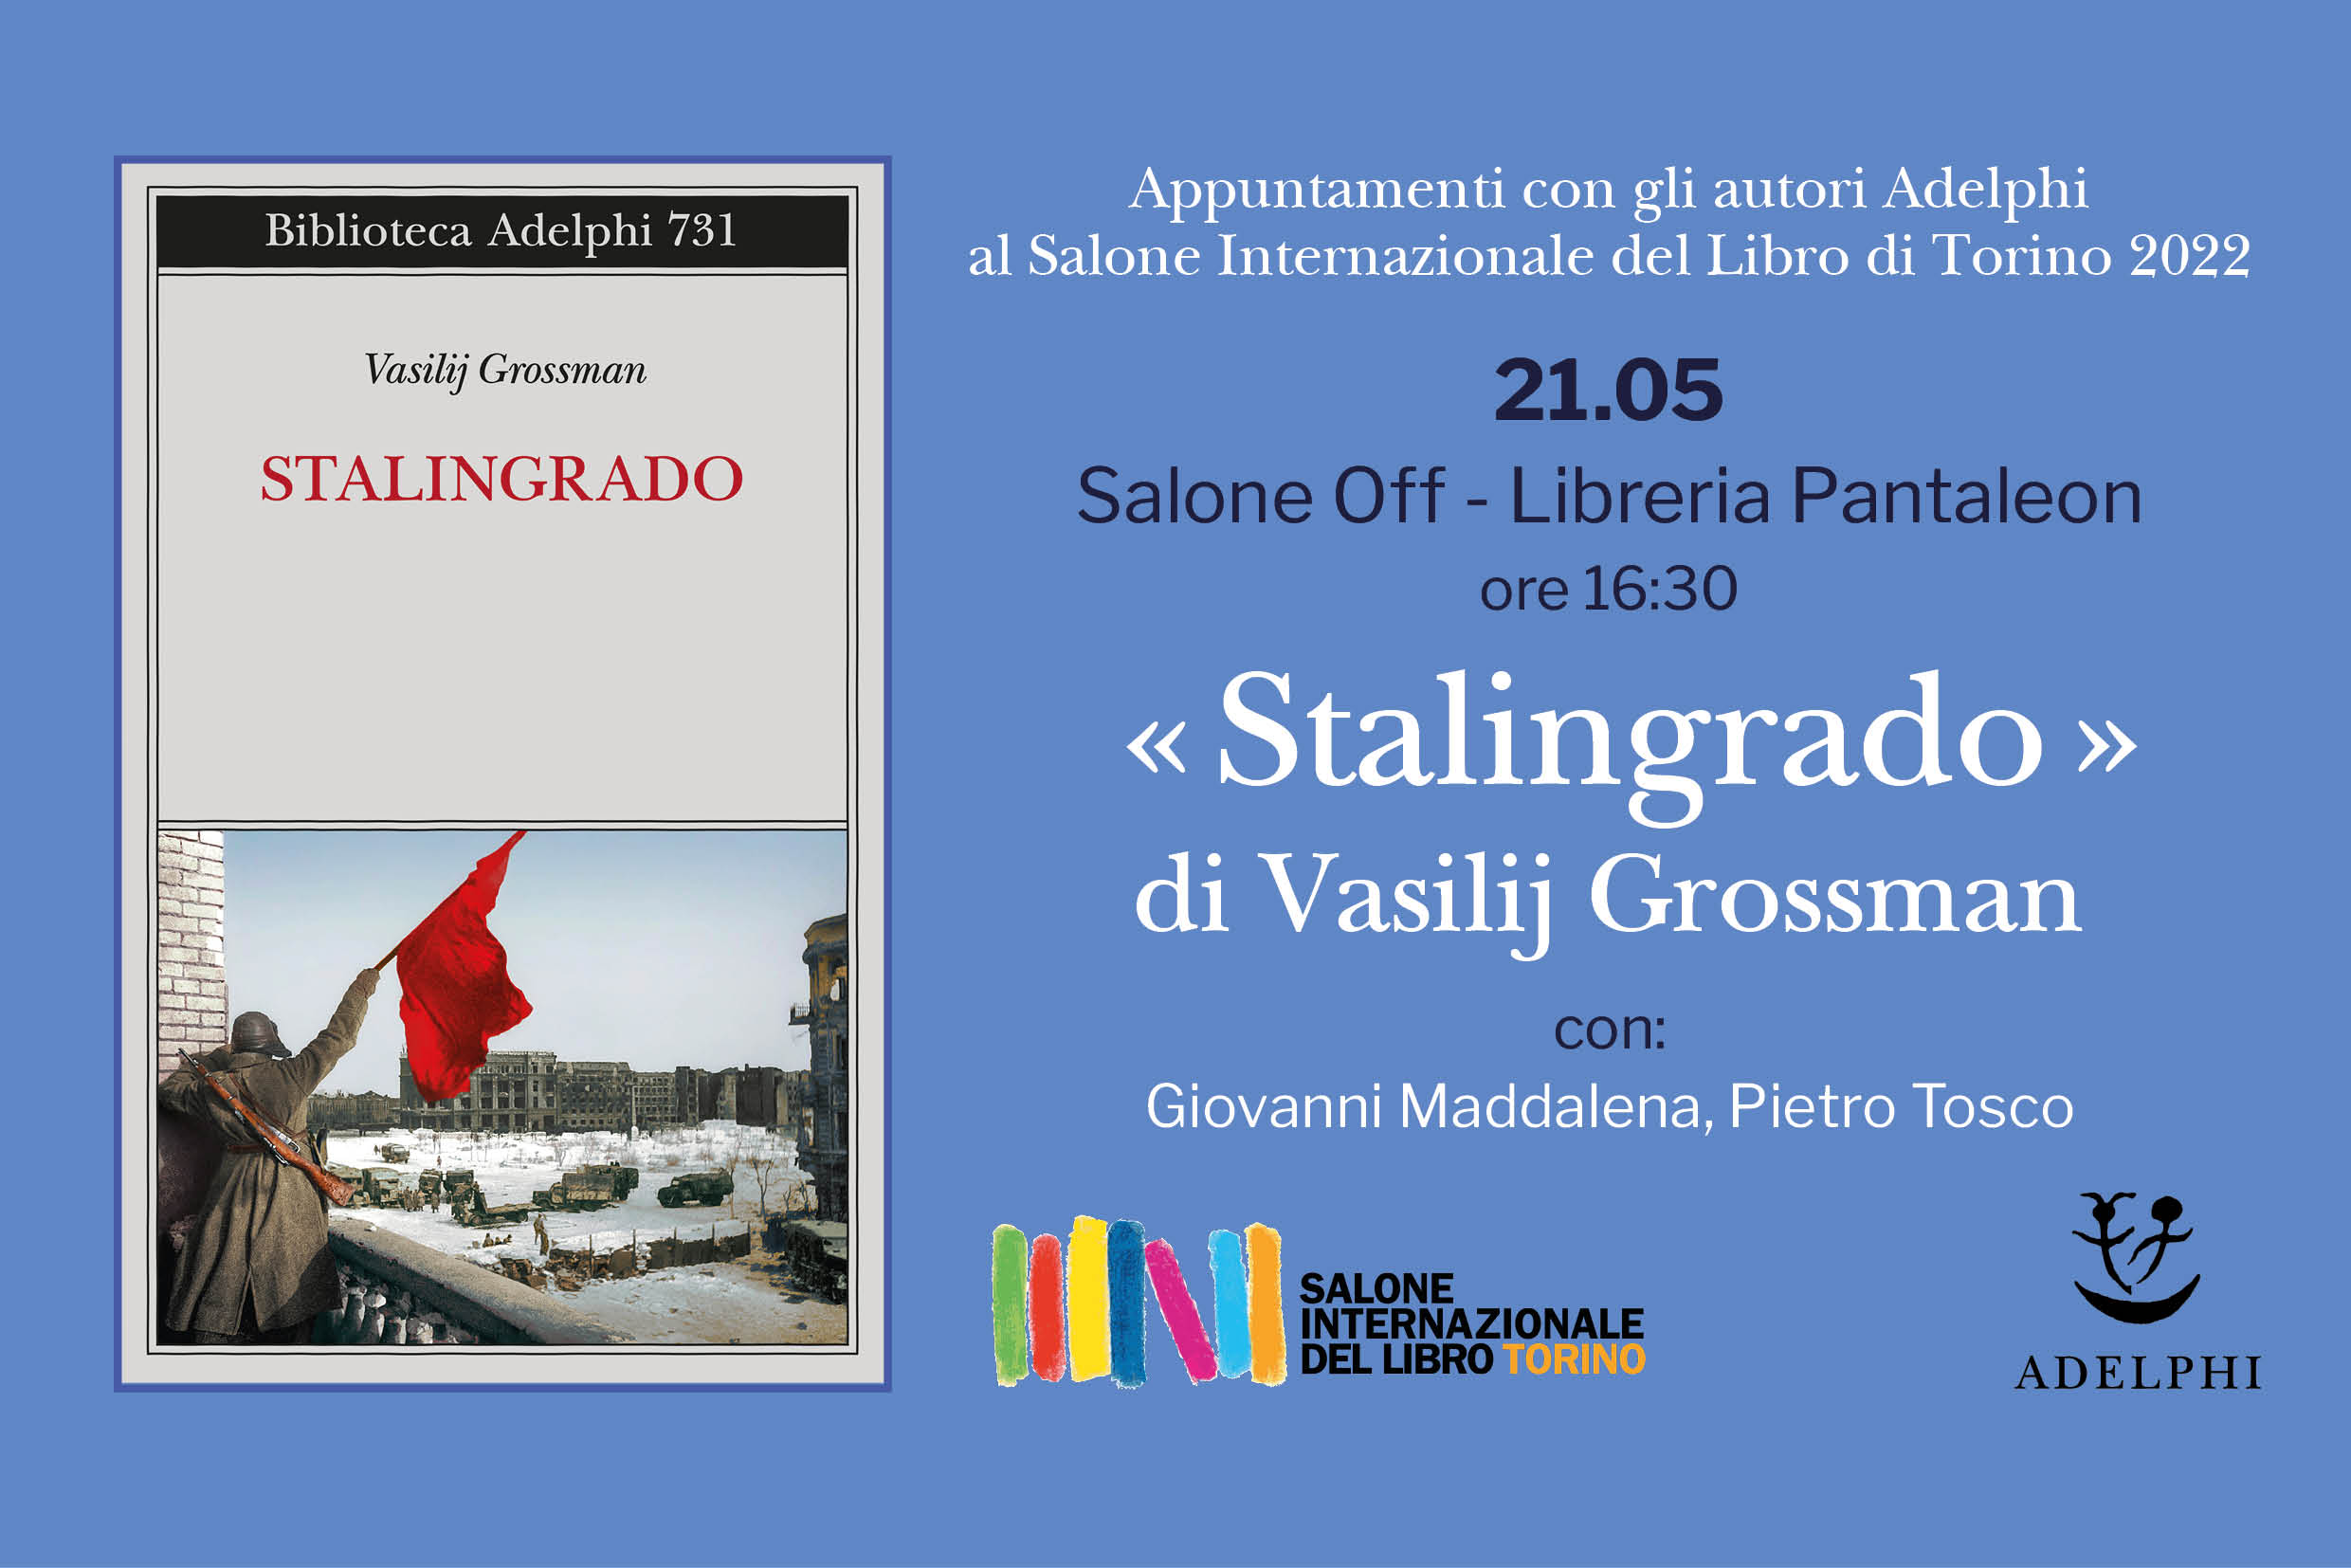 Stalingrado di Vasilij Grossman al Salone del Libro di Torino 2022